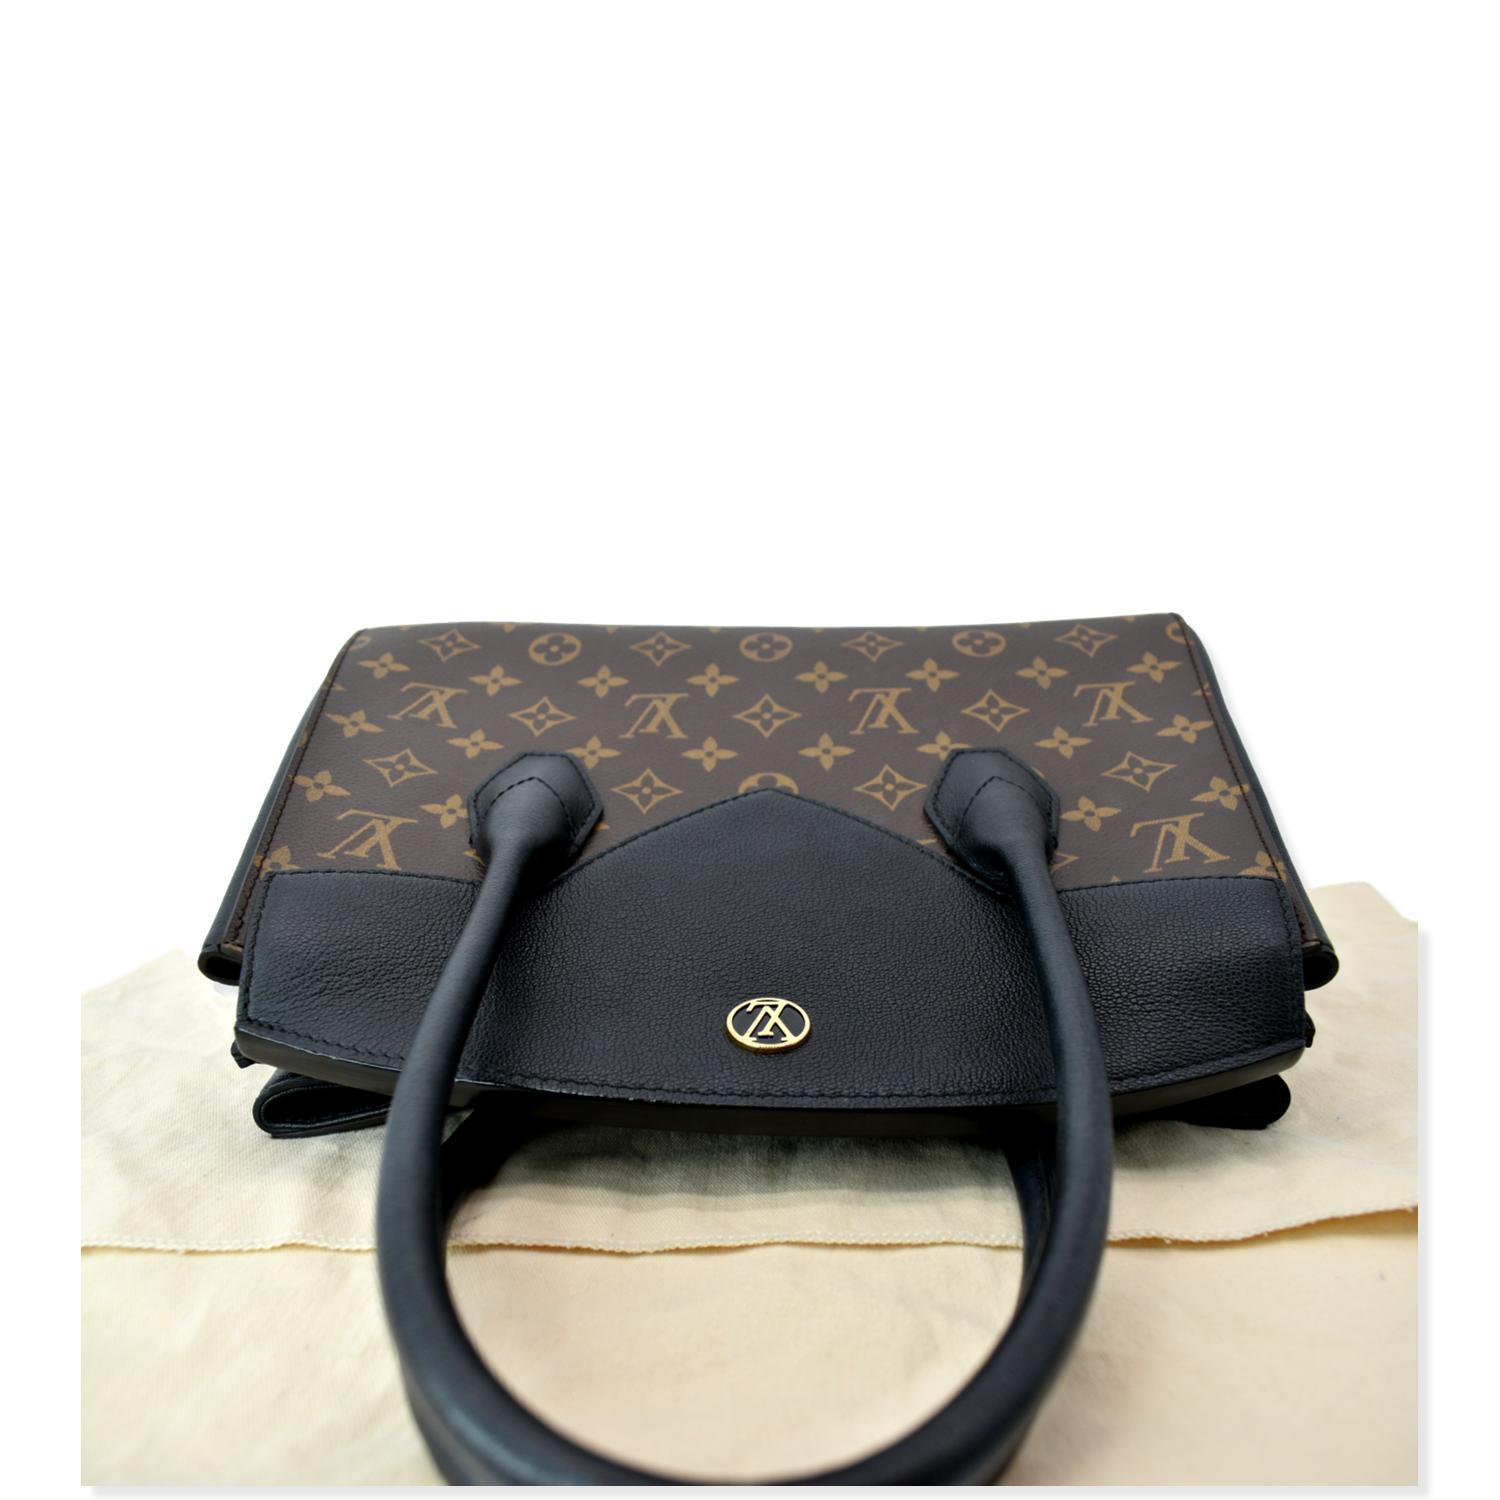 Louis Vuitton Florine bag – Beccas Bags